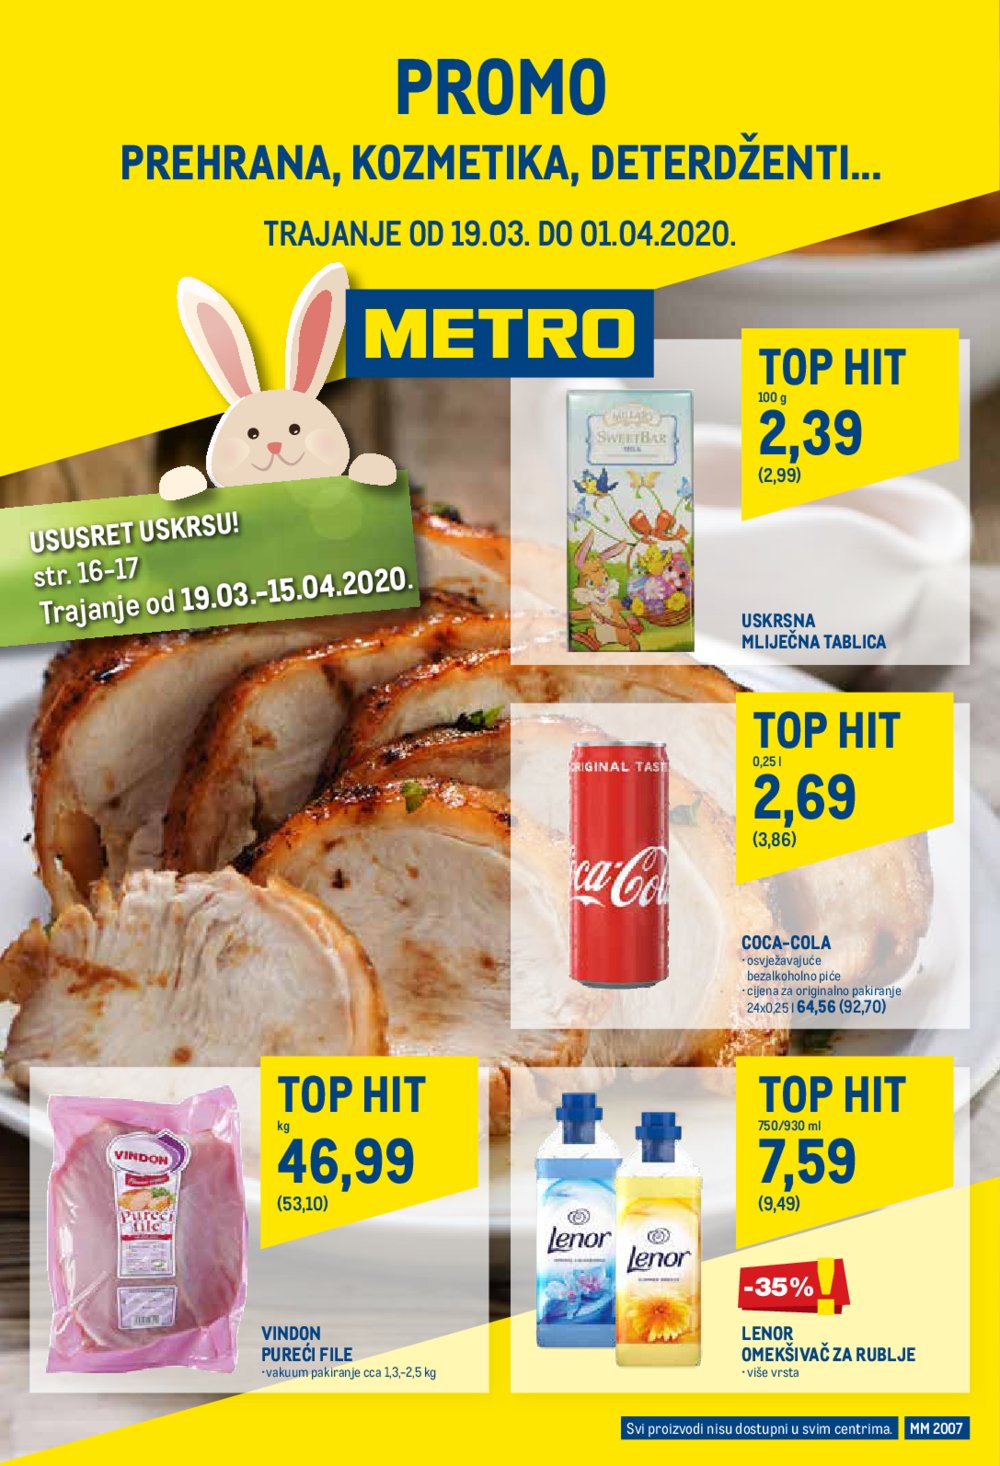 Metro katalog Prehrana 19.03.-01.04.2020. 